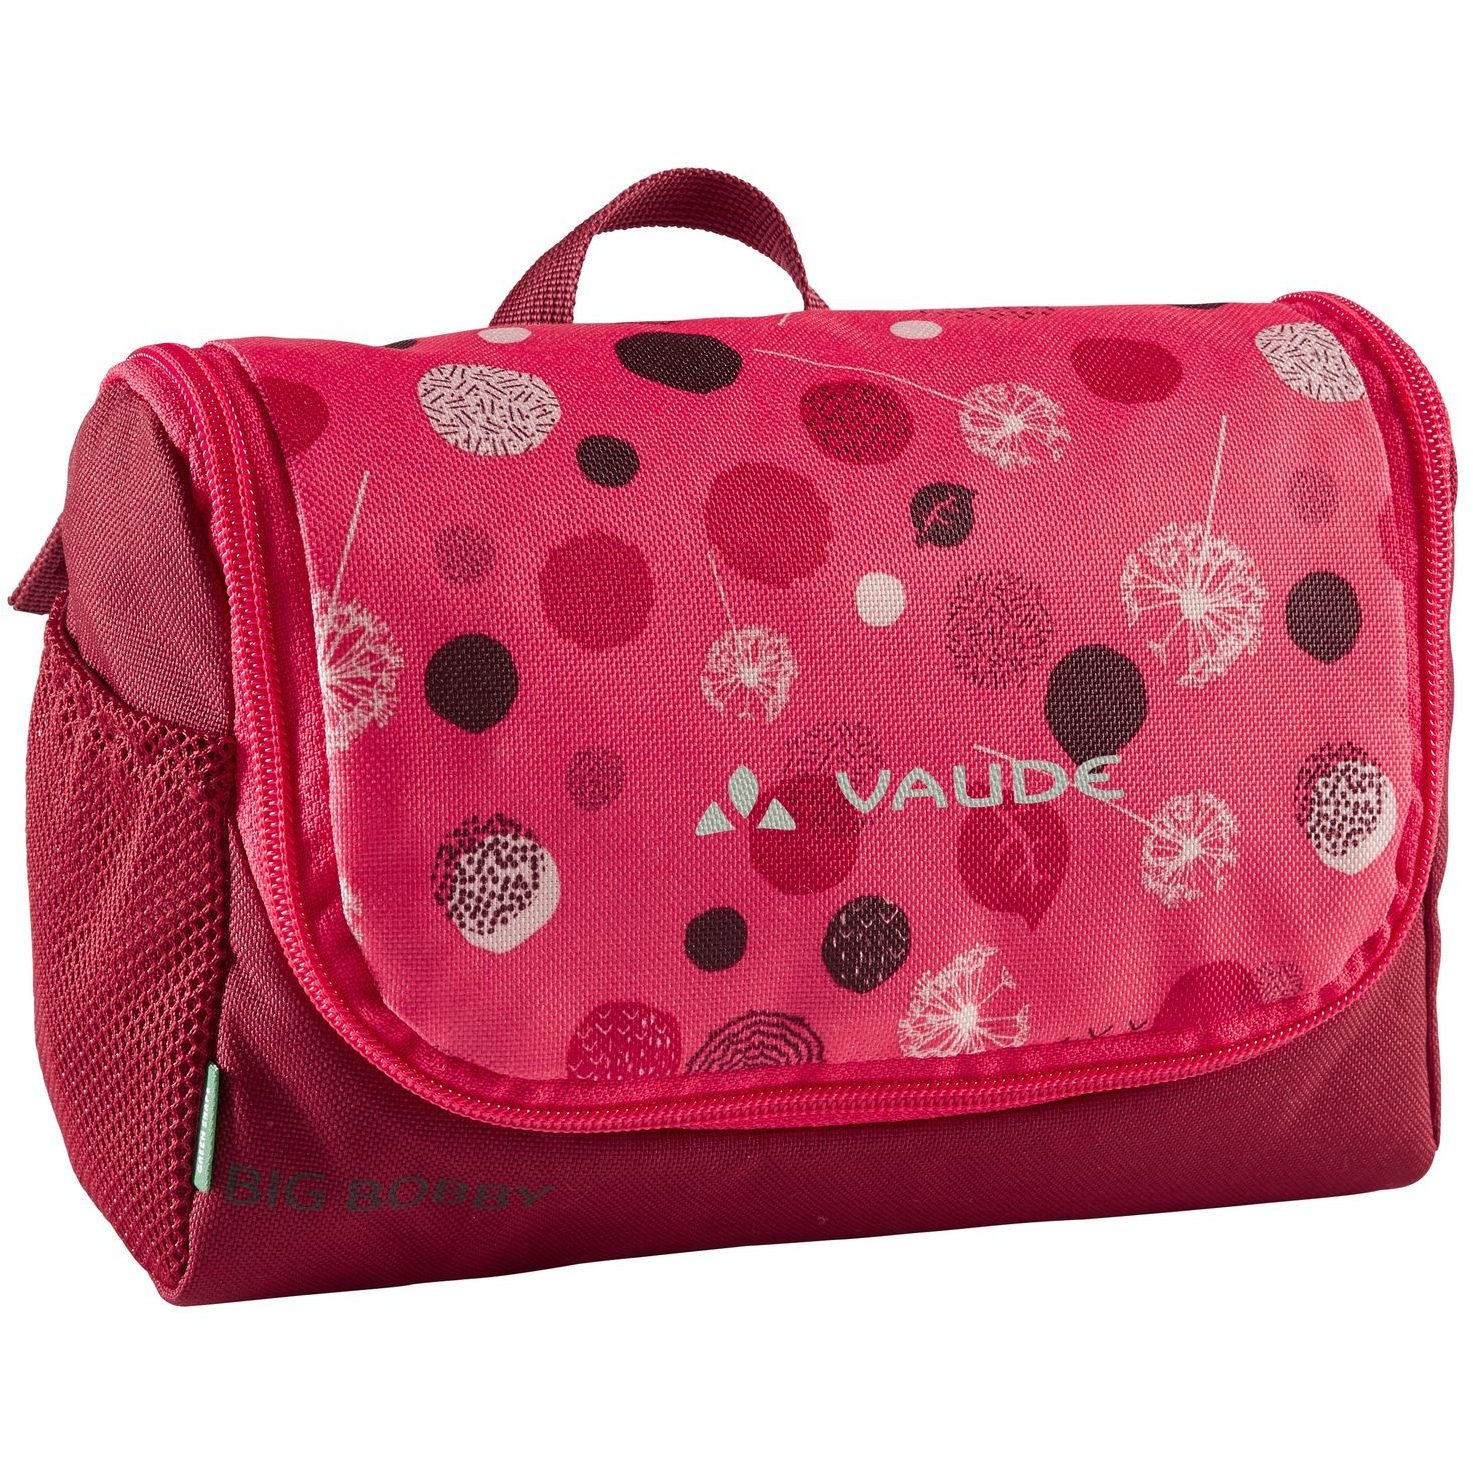 Produktbild von Vaude Big Bobby Kinder-Waschtasche - 2L - bright pink/cranberry